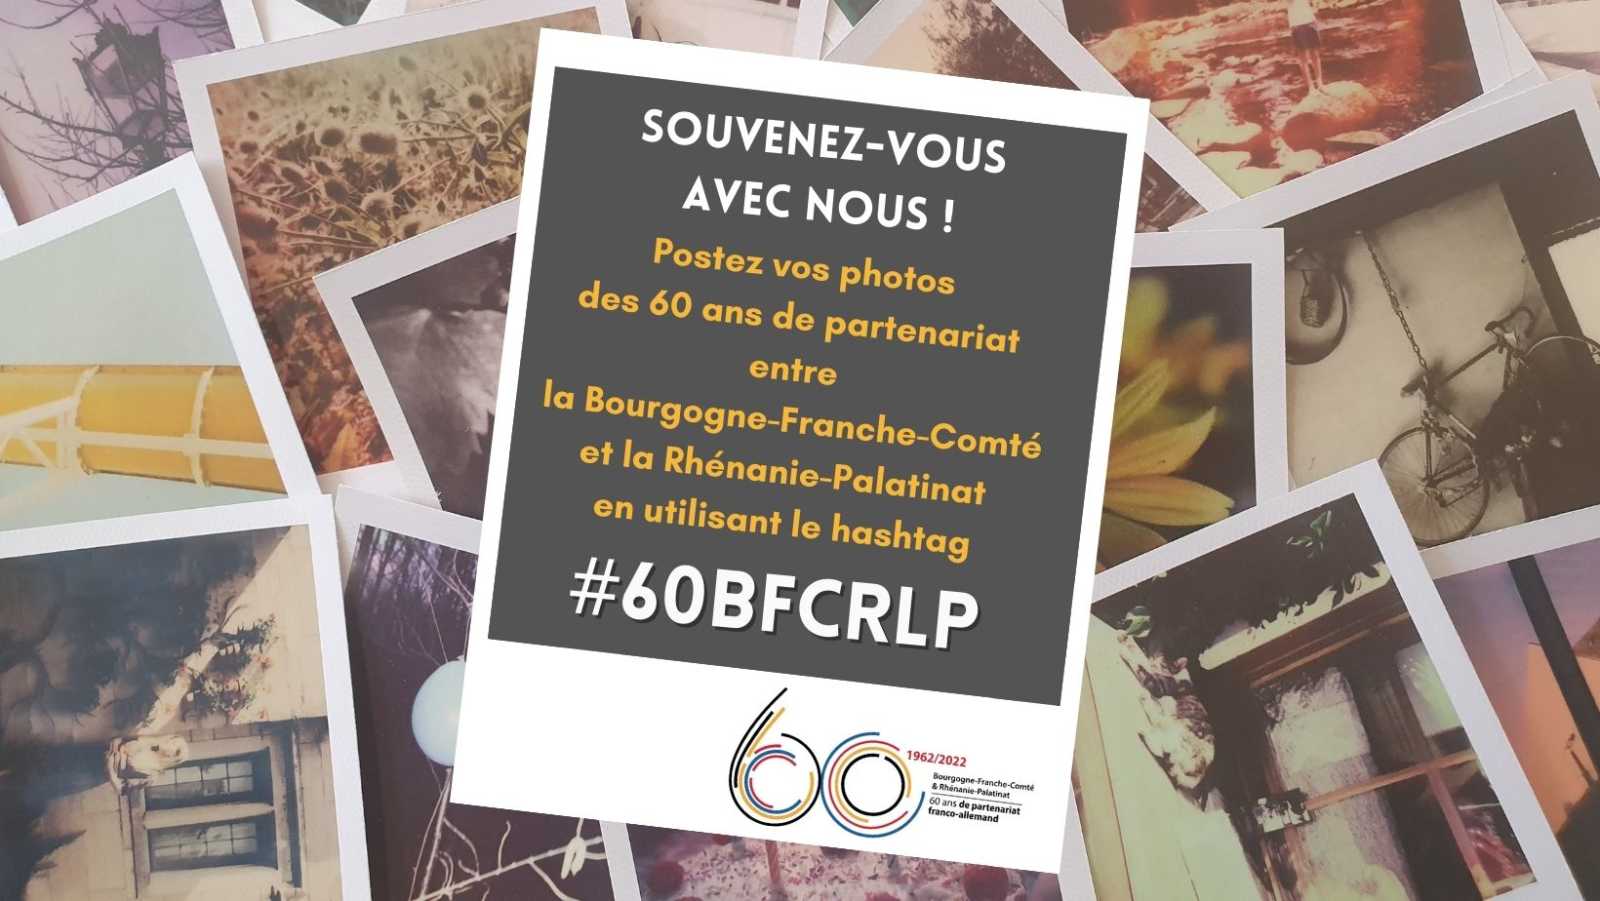 #60BFCRLP – Souvenez vous avec nous ! – 60 ans de partenariat régional